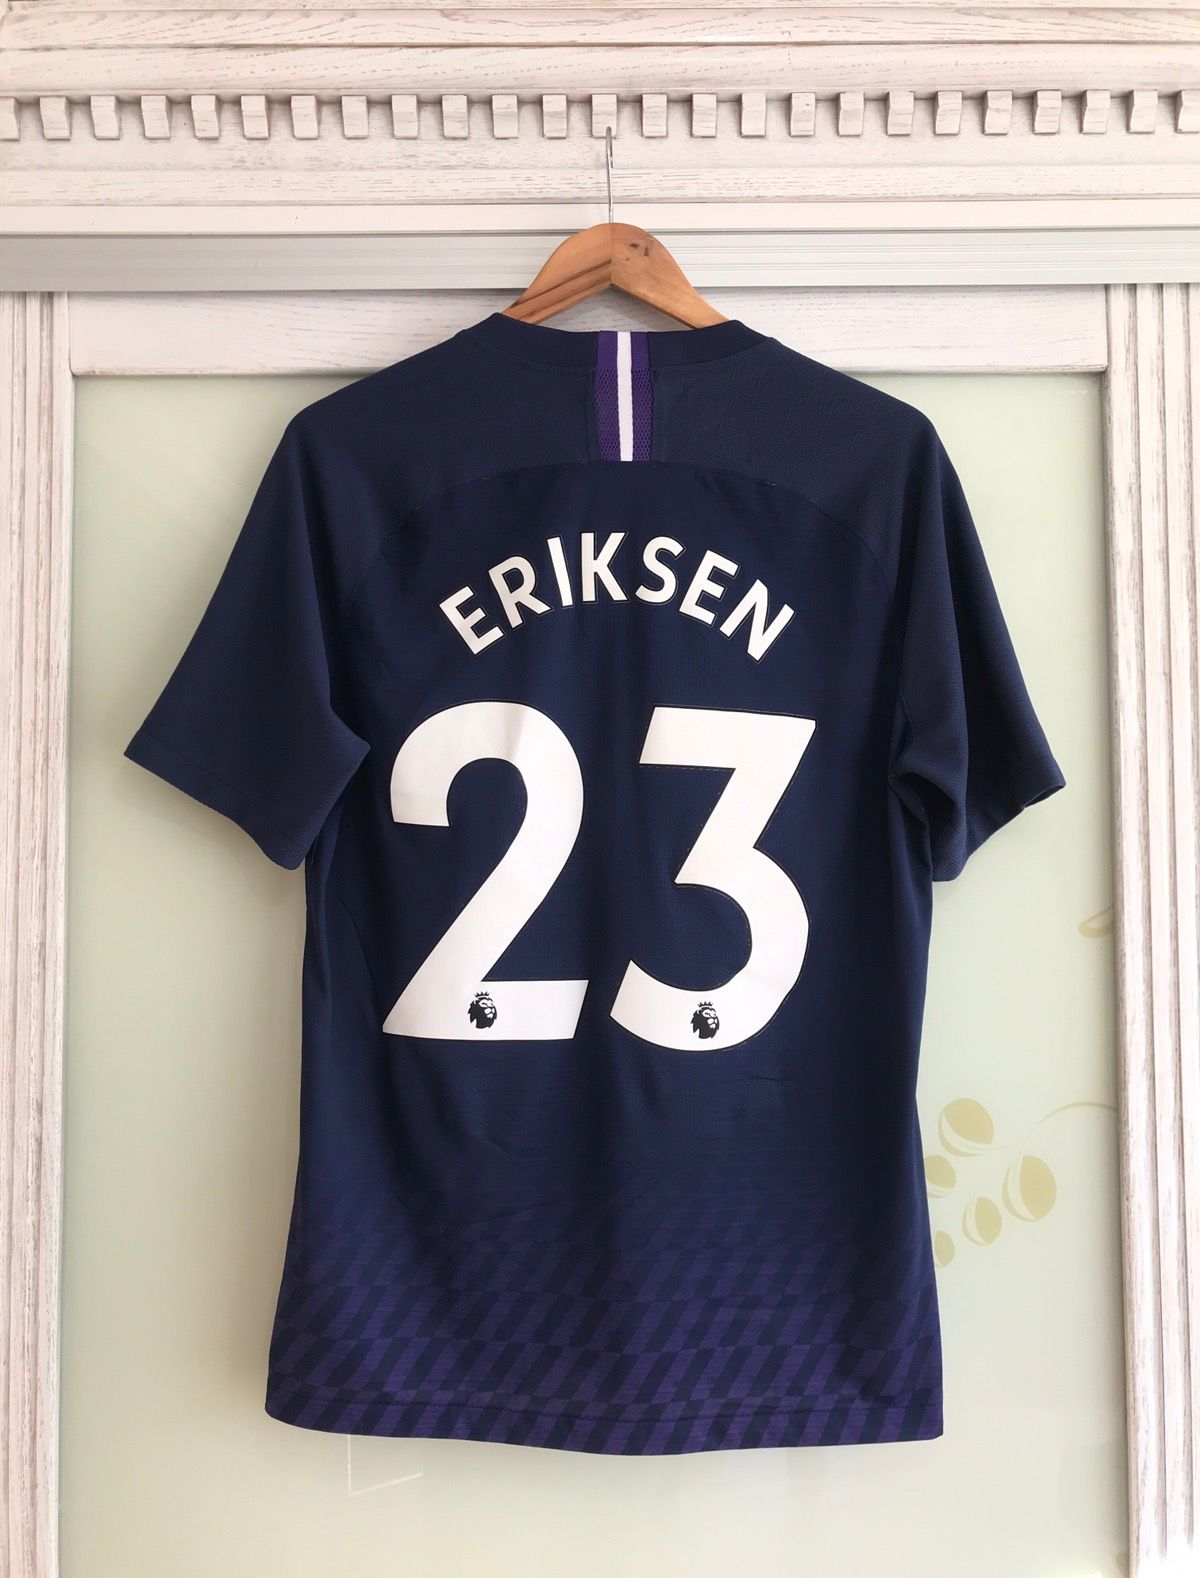 Nike Tottenham 2019-2020 Eriksen Nike Vaporknit Soccer Jersey Kit Size US L / EU 52-54 / 3 - 1 Preview